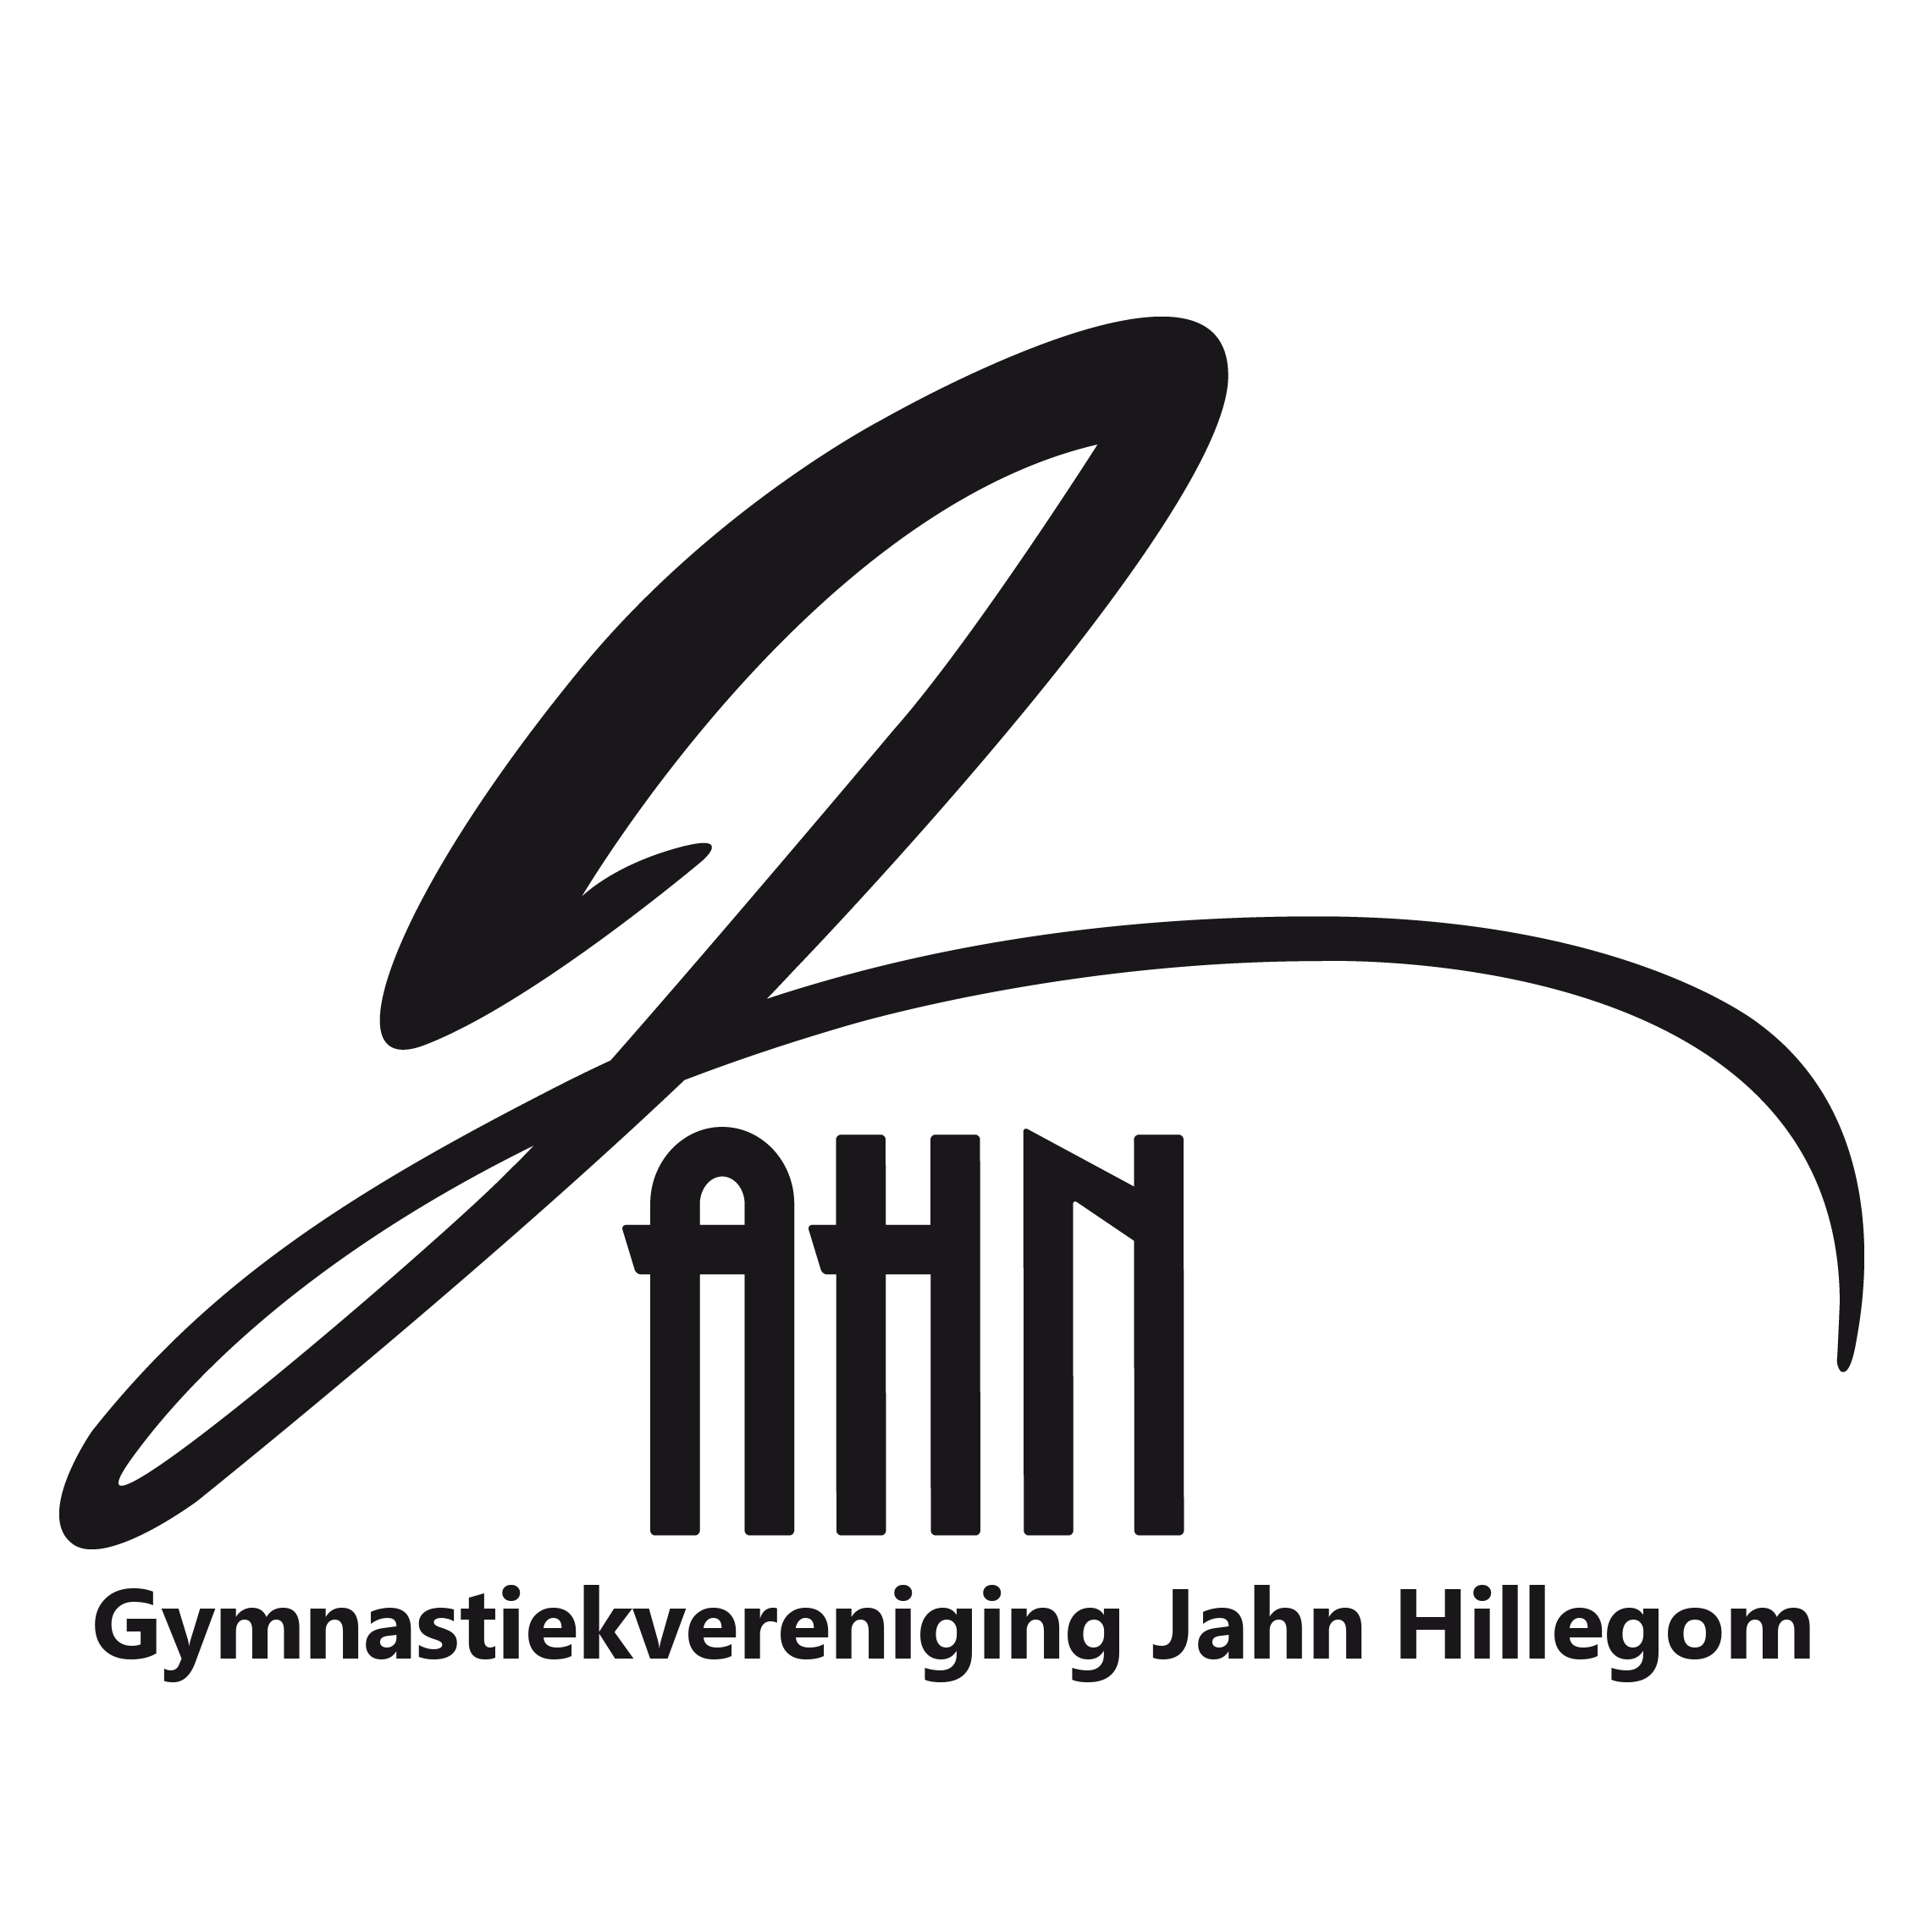 Gymnastiekvereniging Jahn Hillegom